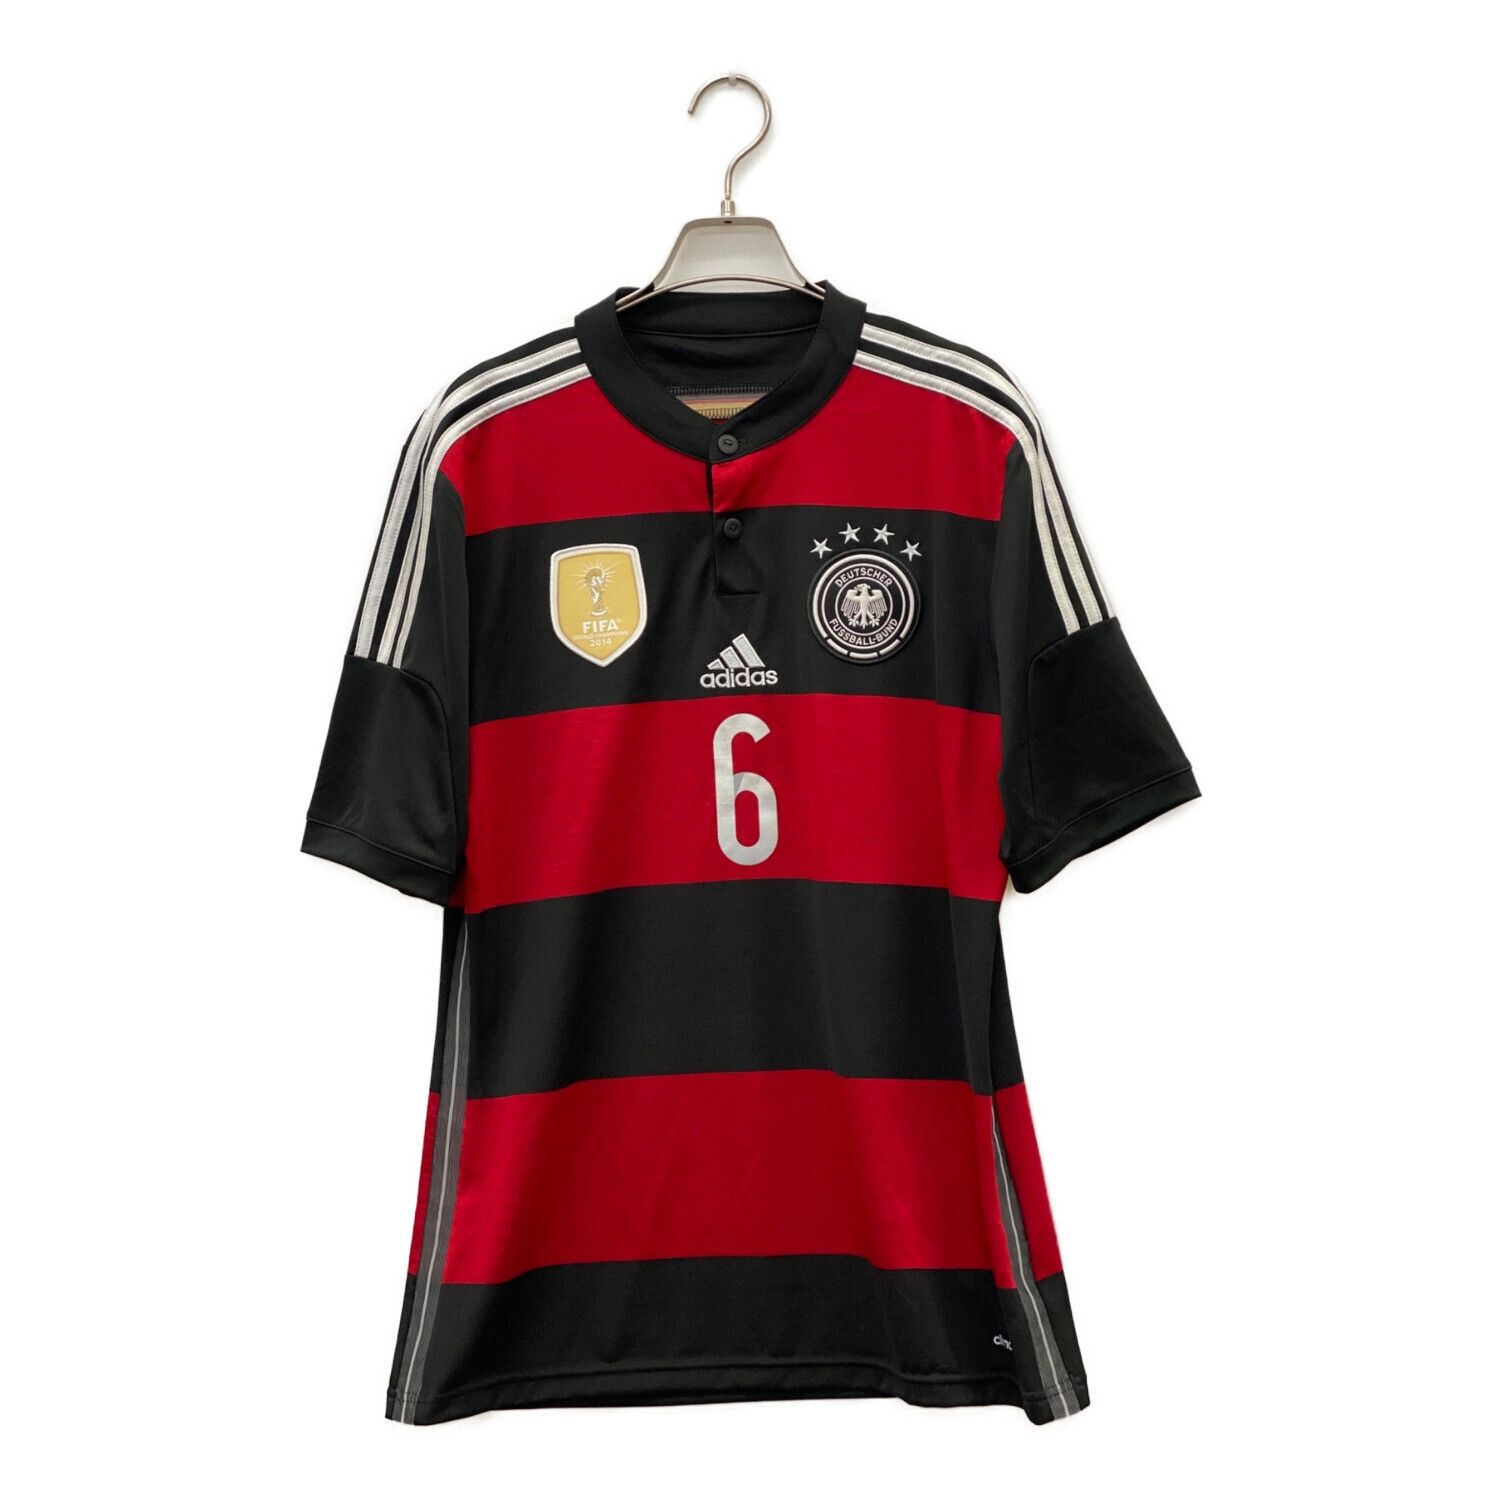 ドイツ代表 サッカーユニフォーム SIZE L ブラック×レッド 2014年W杯